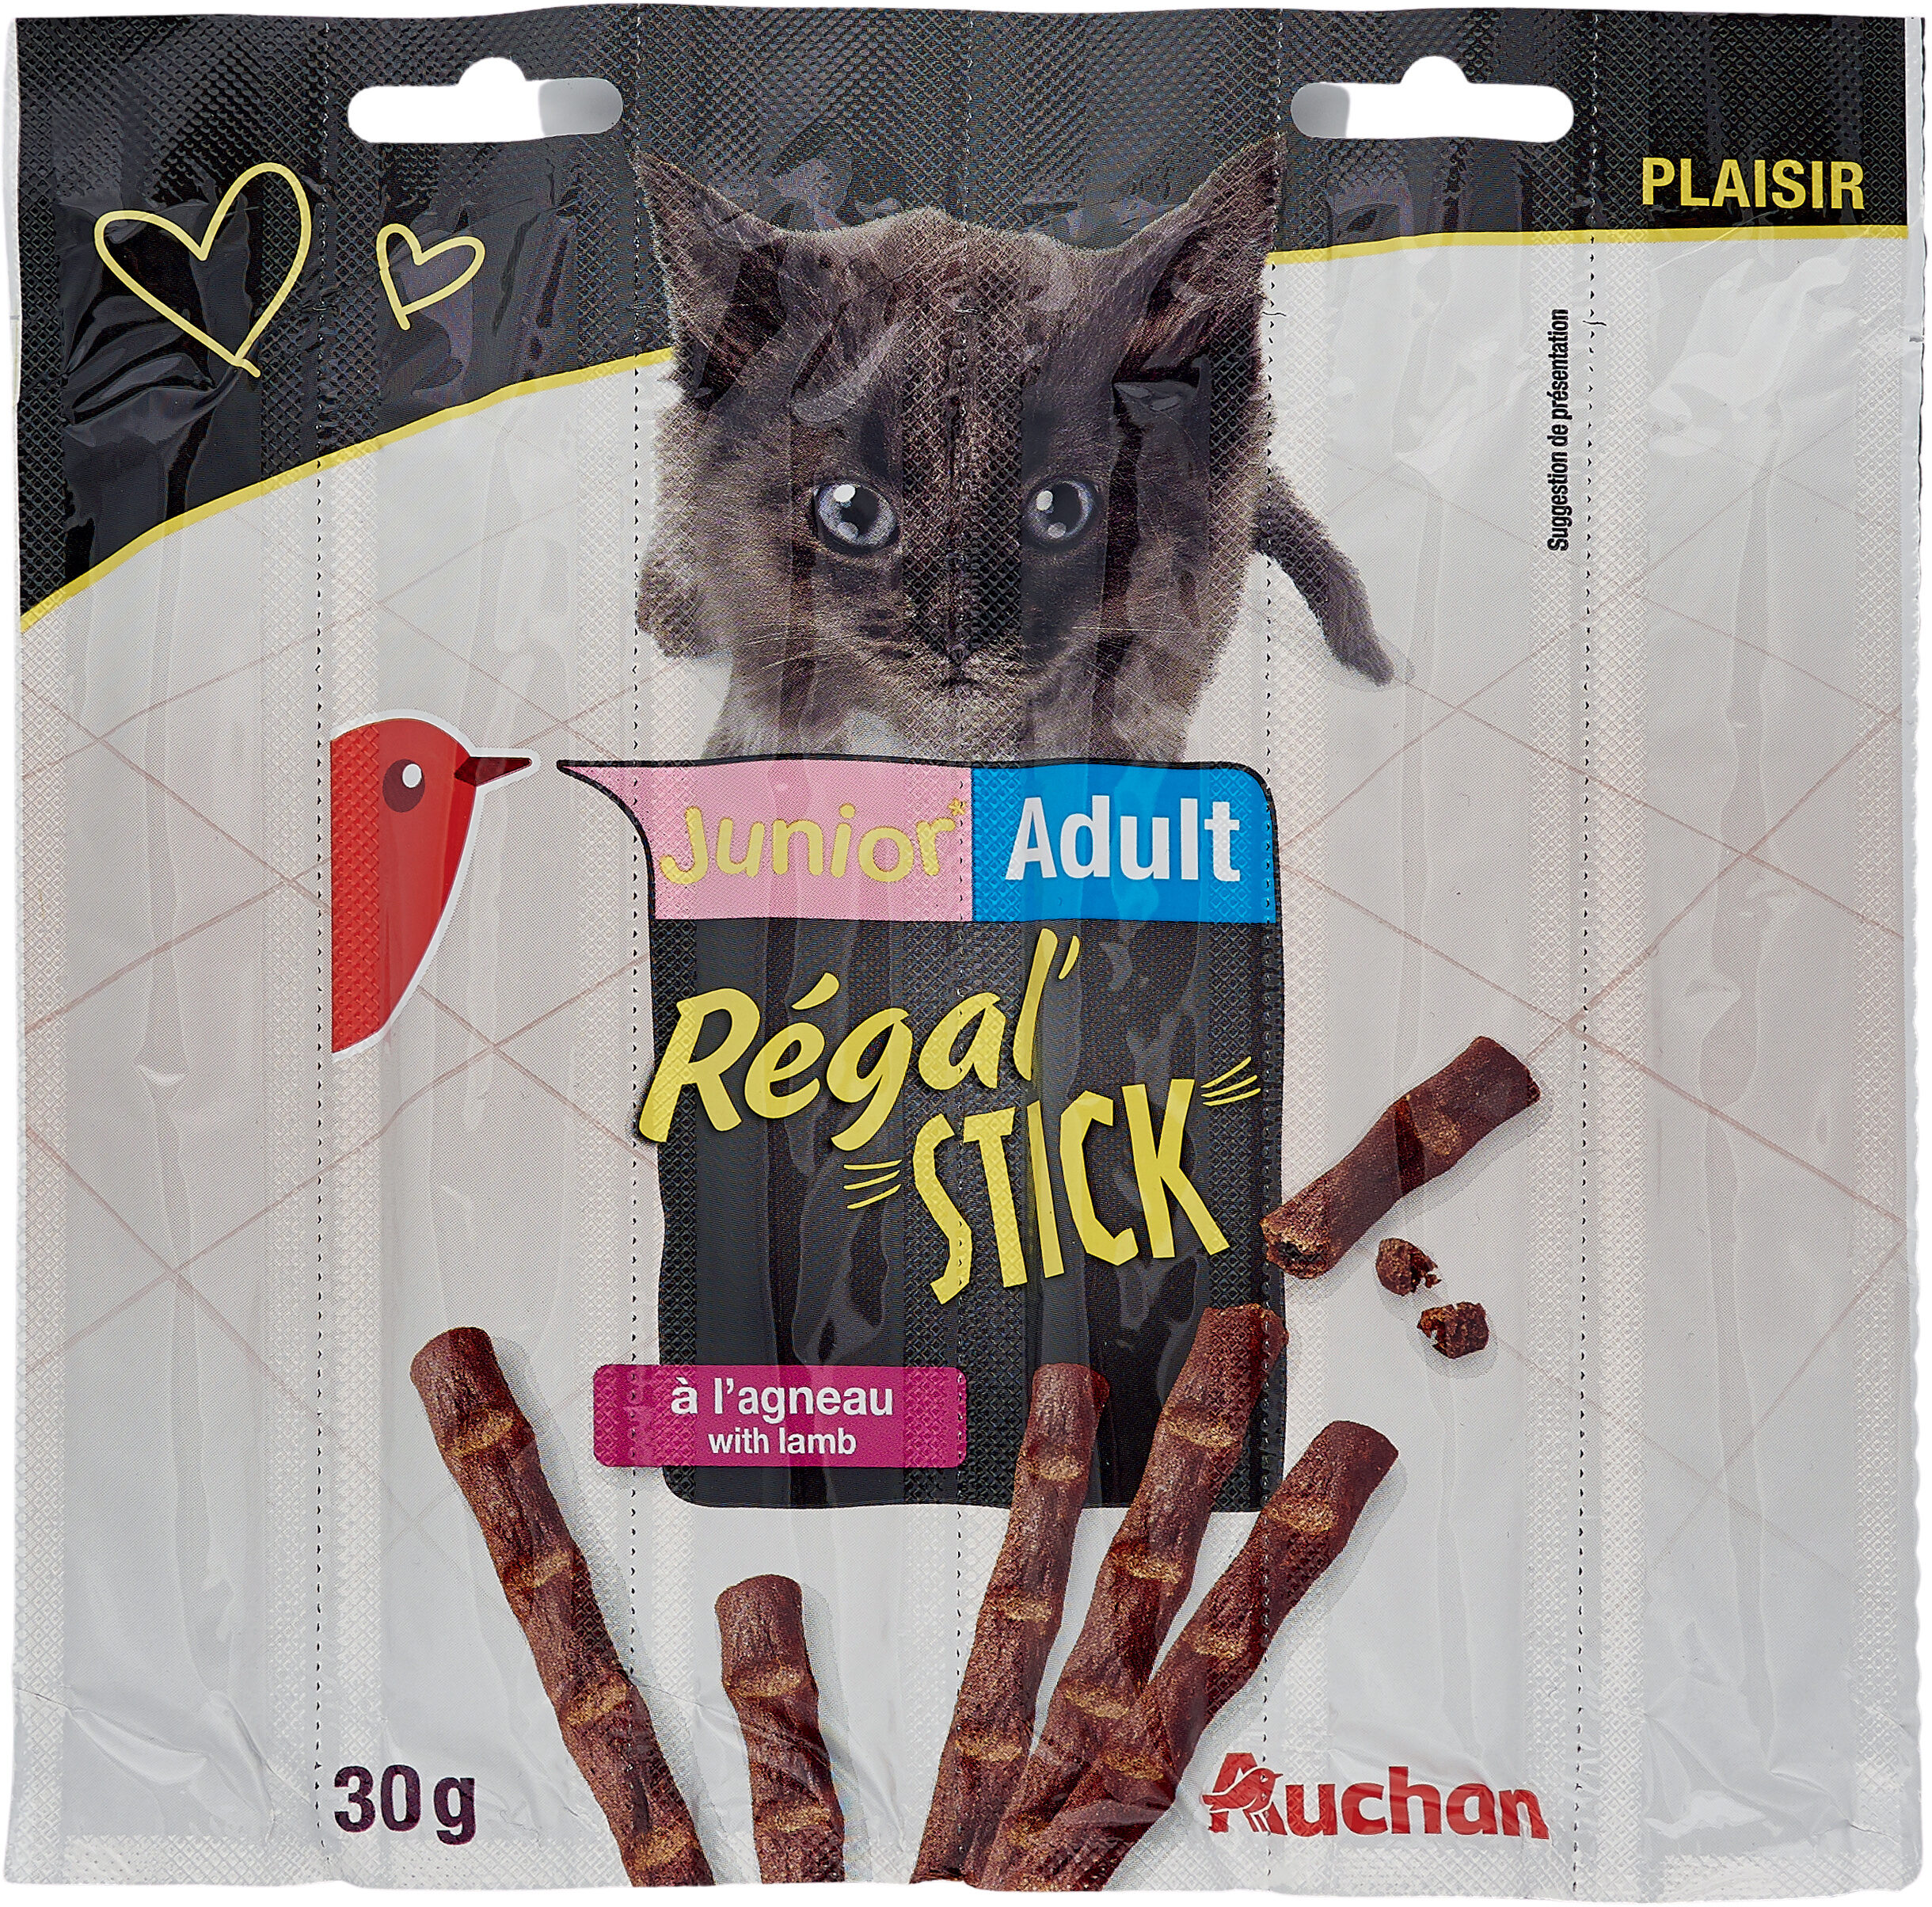 Adult/Junior Regal'Stick à l'agneau Auchan 30g - Product - fr